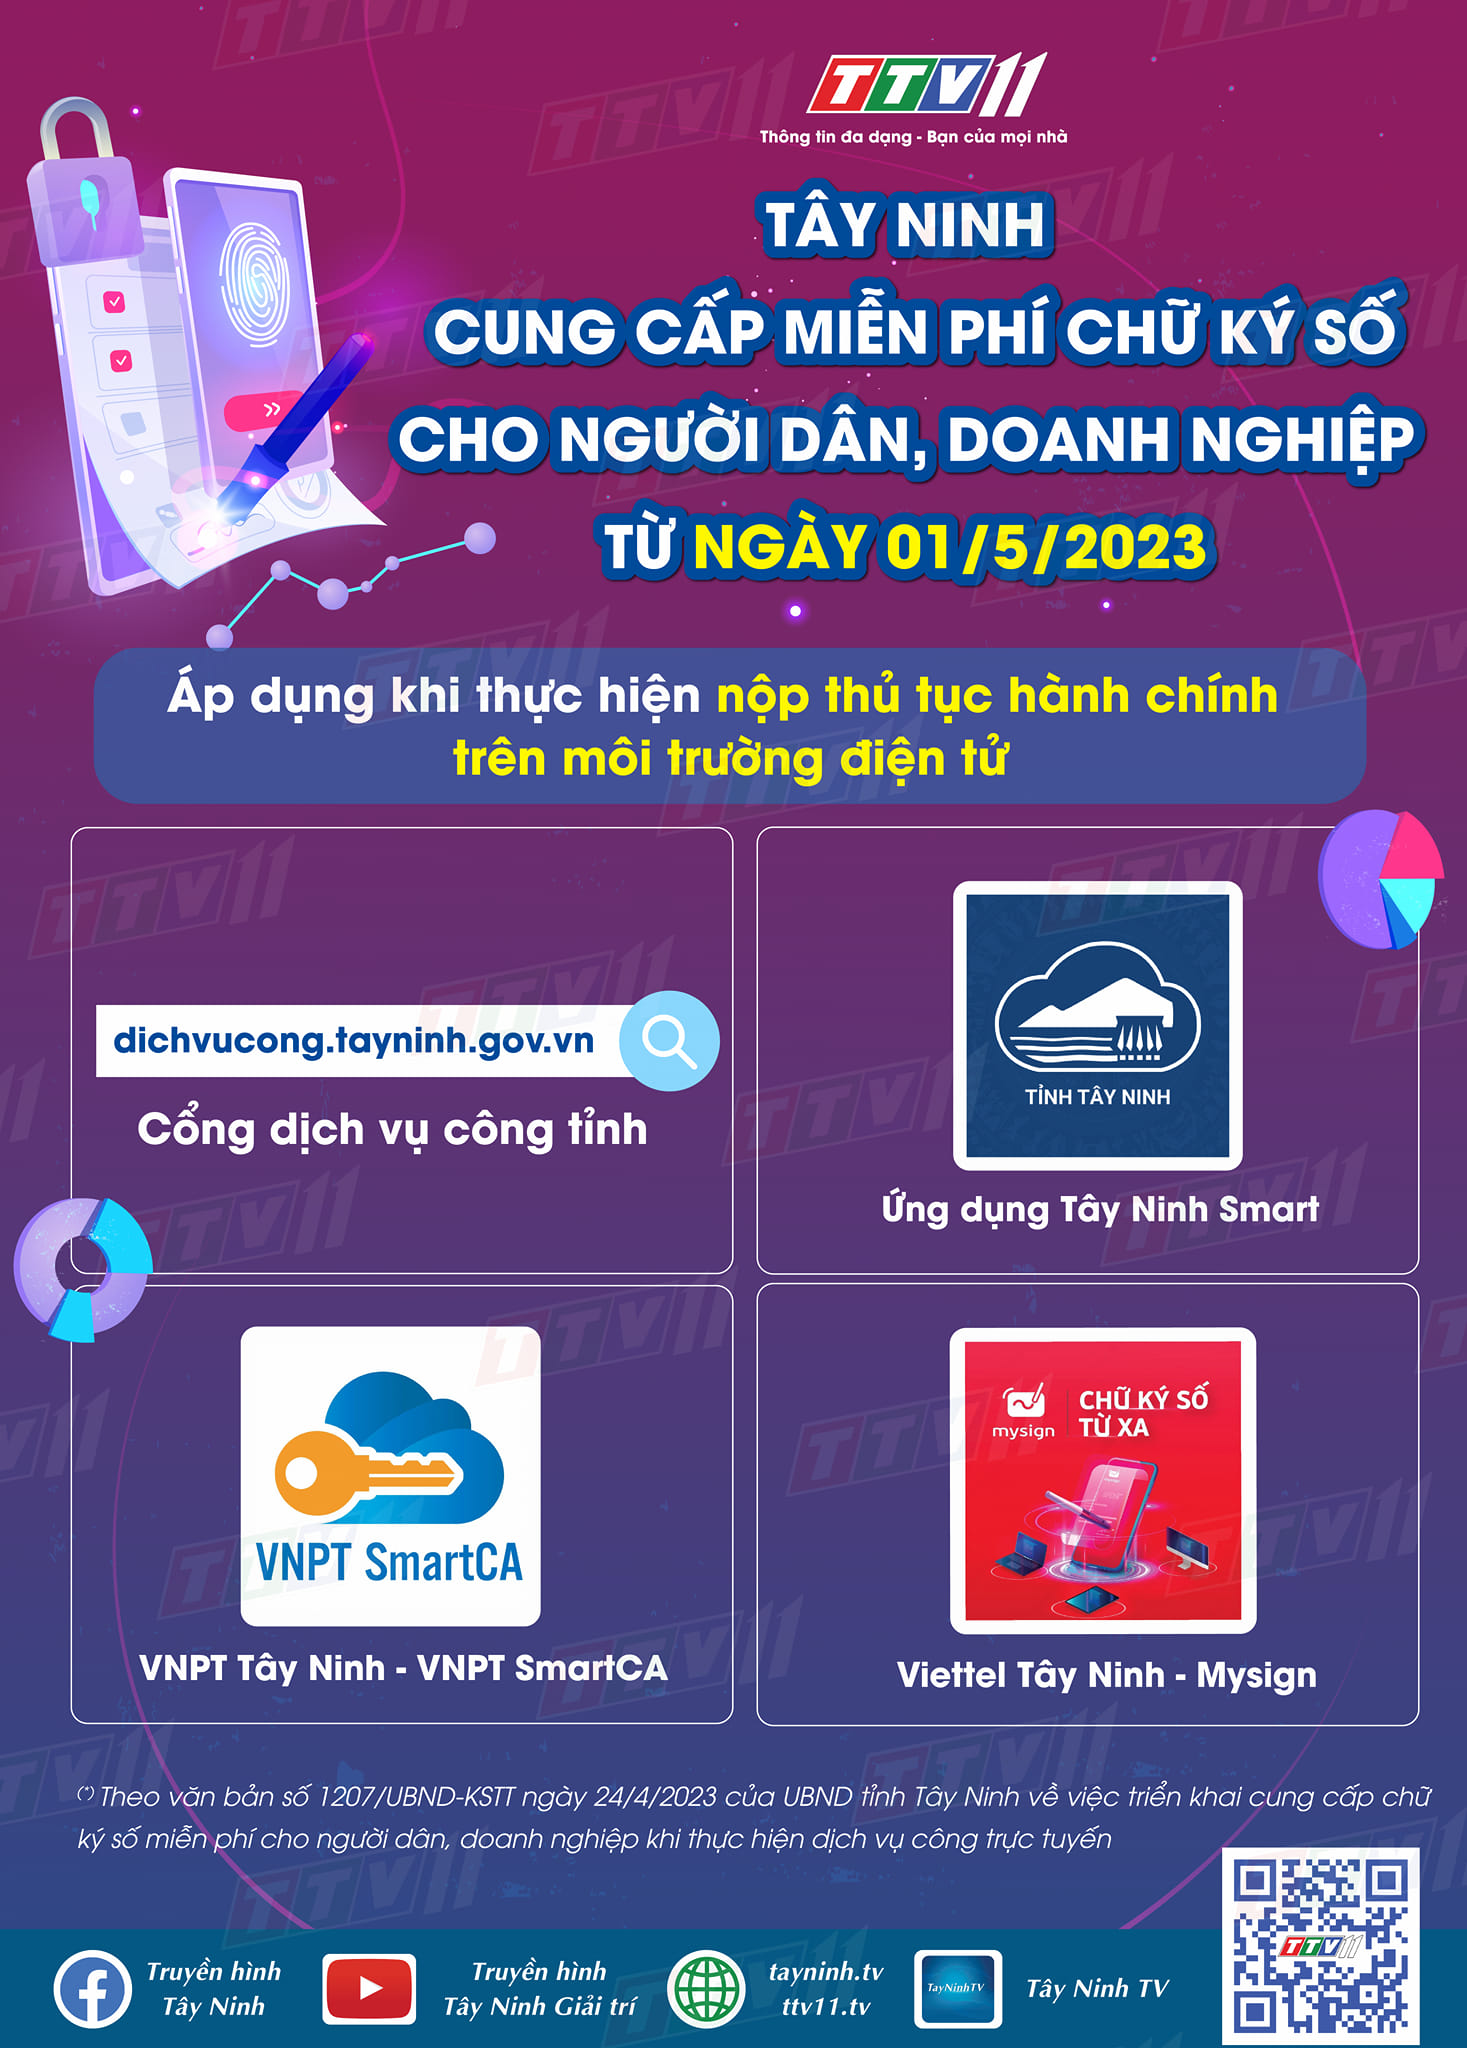 Tây Ninh – Cung cấp miễn phí chữ ký số cho người dân, doanh nghiệp từ ngày 01-5-2023, áp dụng khi thực hiện nộp thủ tục hành chính trên môi trường điện tử.